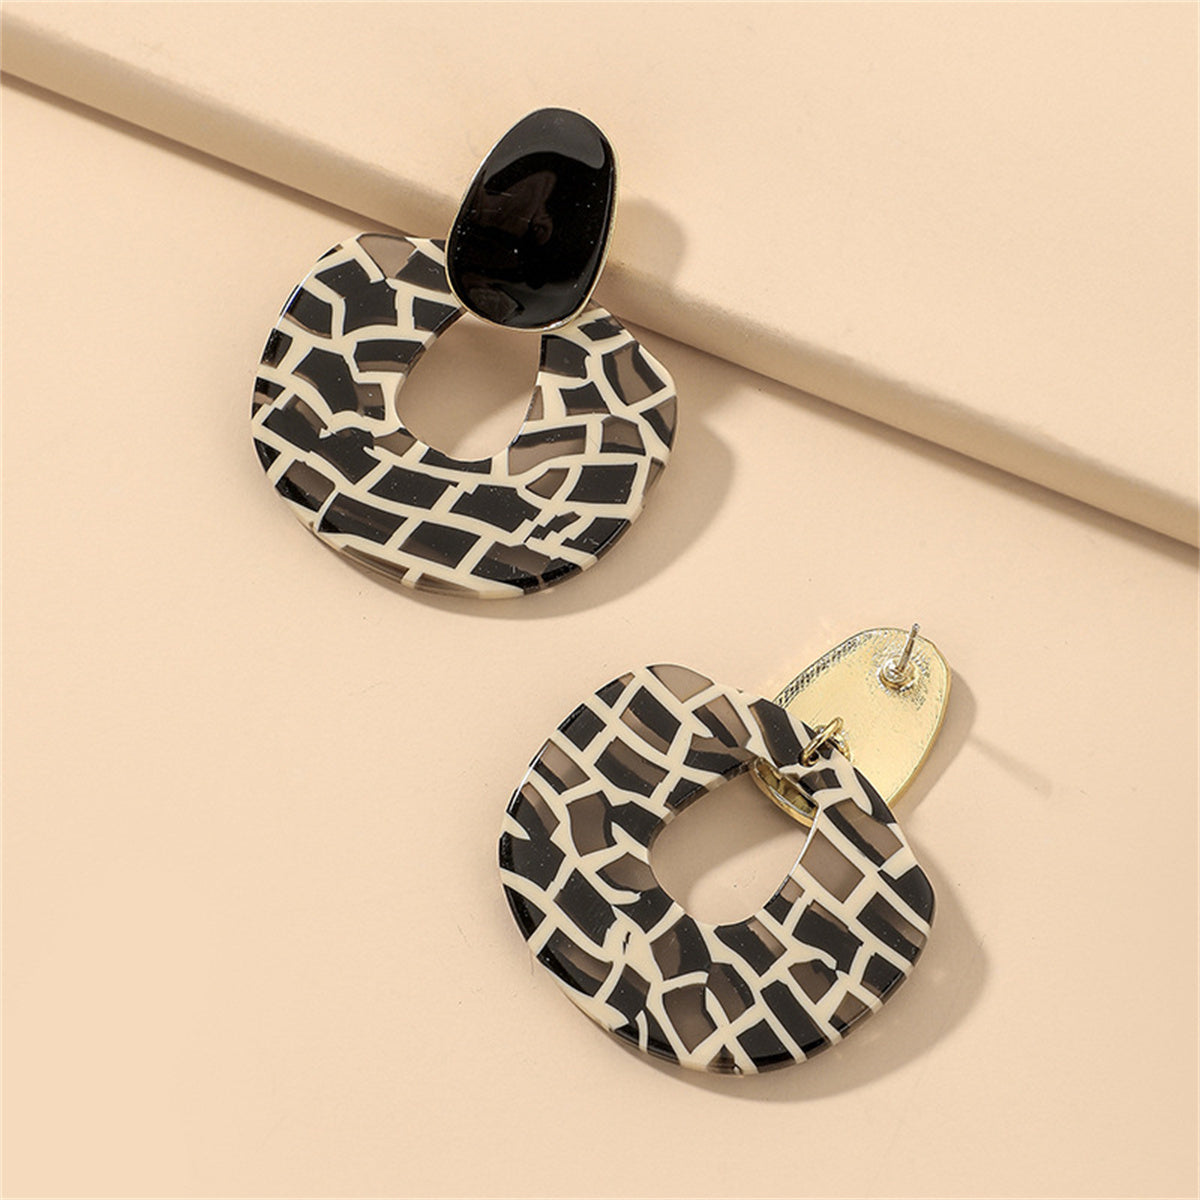 Black Enamel & Acrylic Zebra Oval Drop Earrings